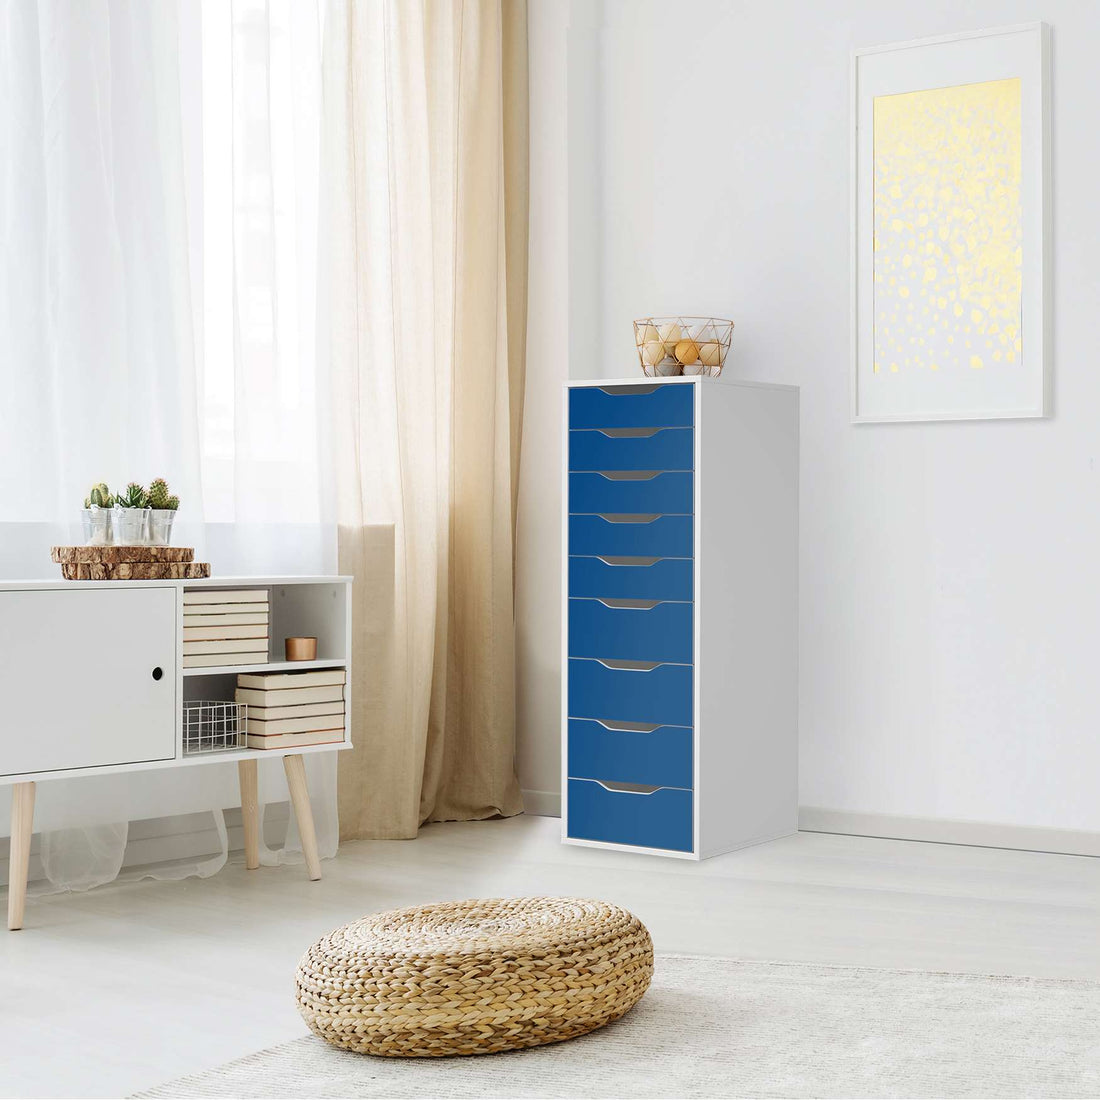 Folie für Möbel Blau Dark - IKEA Alex 9 Schubladen - Wohnzimmer